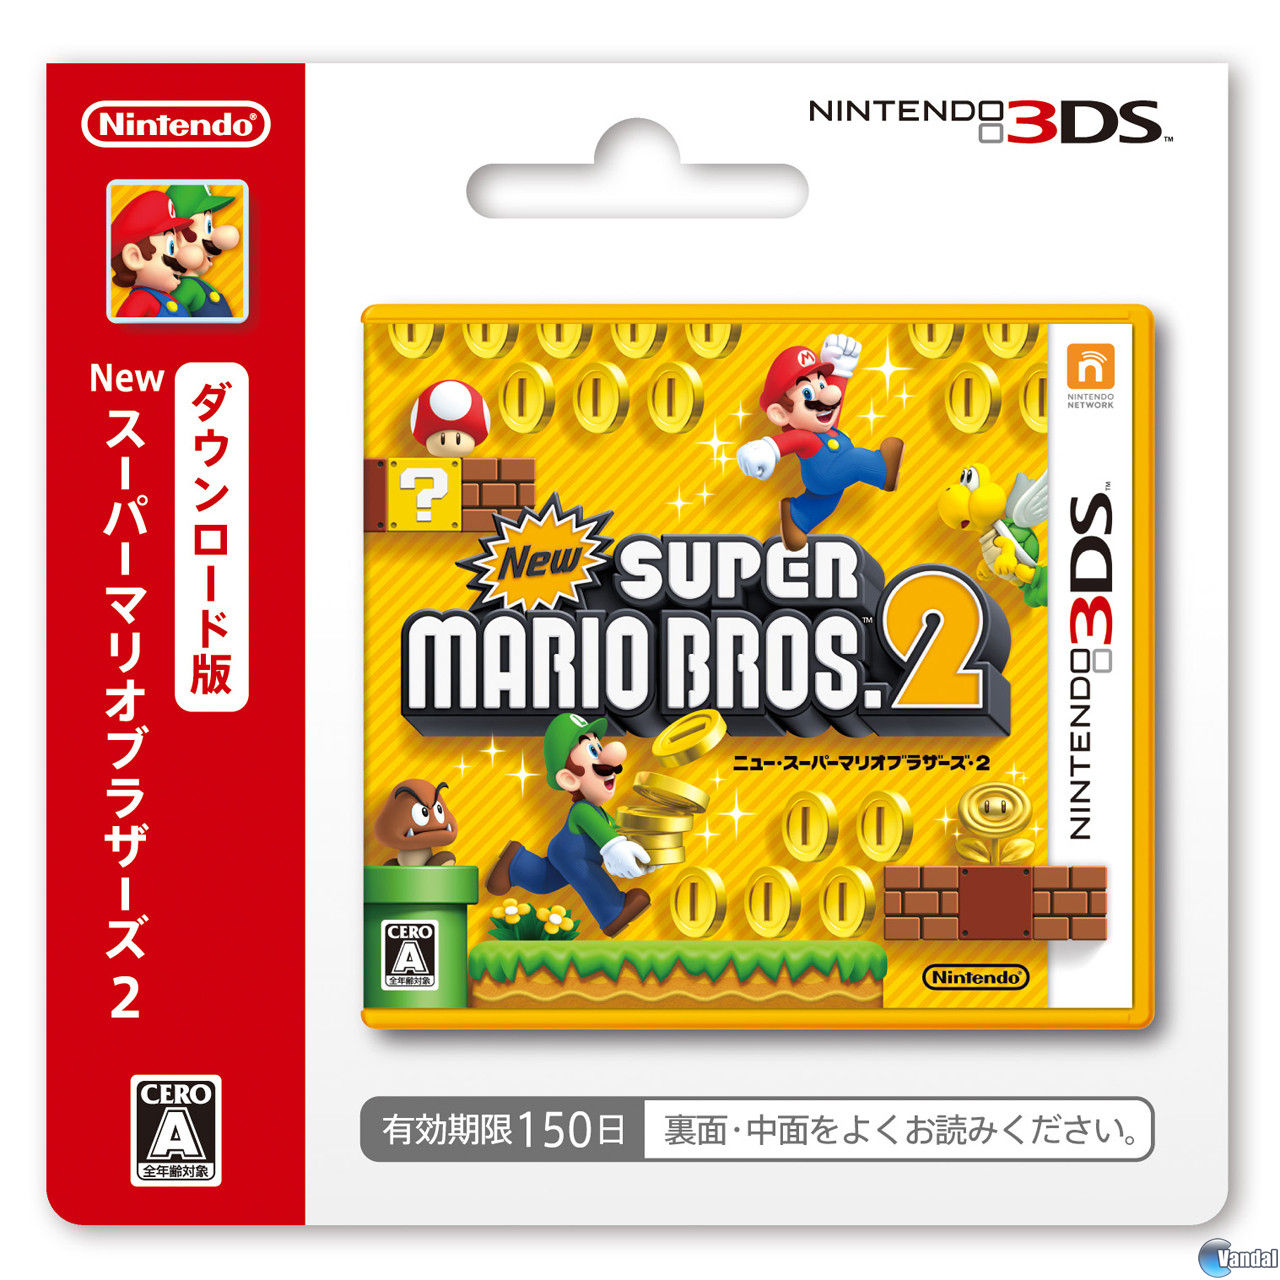 Japón tendrá tarjetas para comprar descargas Super Mario Bros. 2 - Vandal